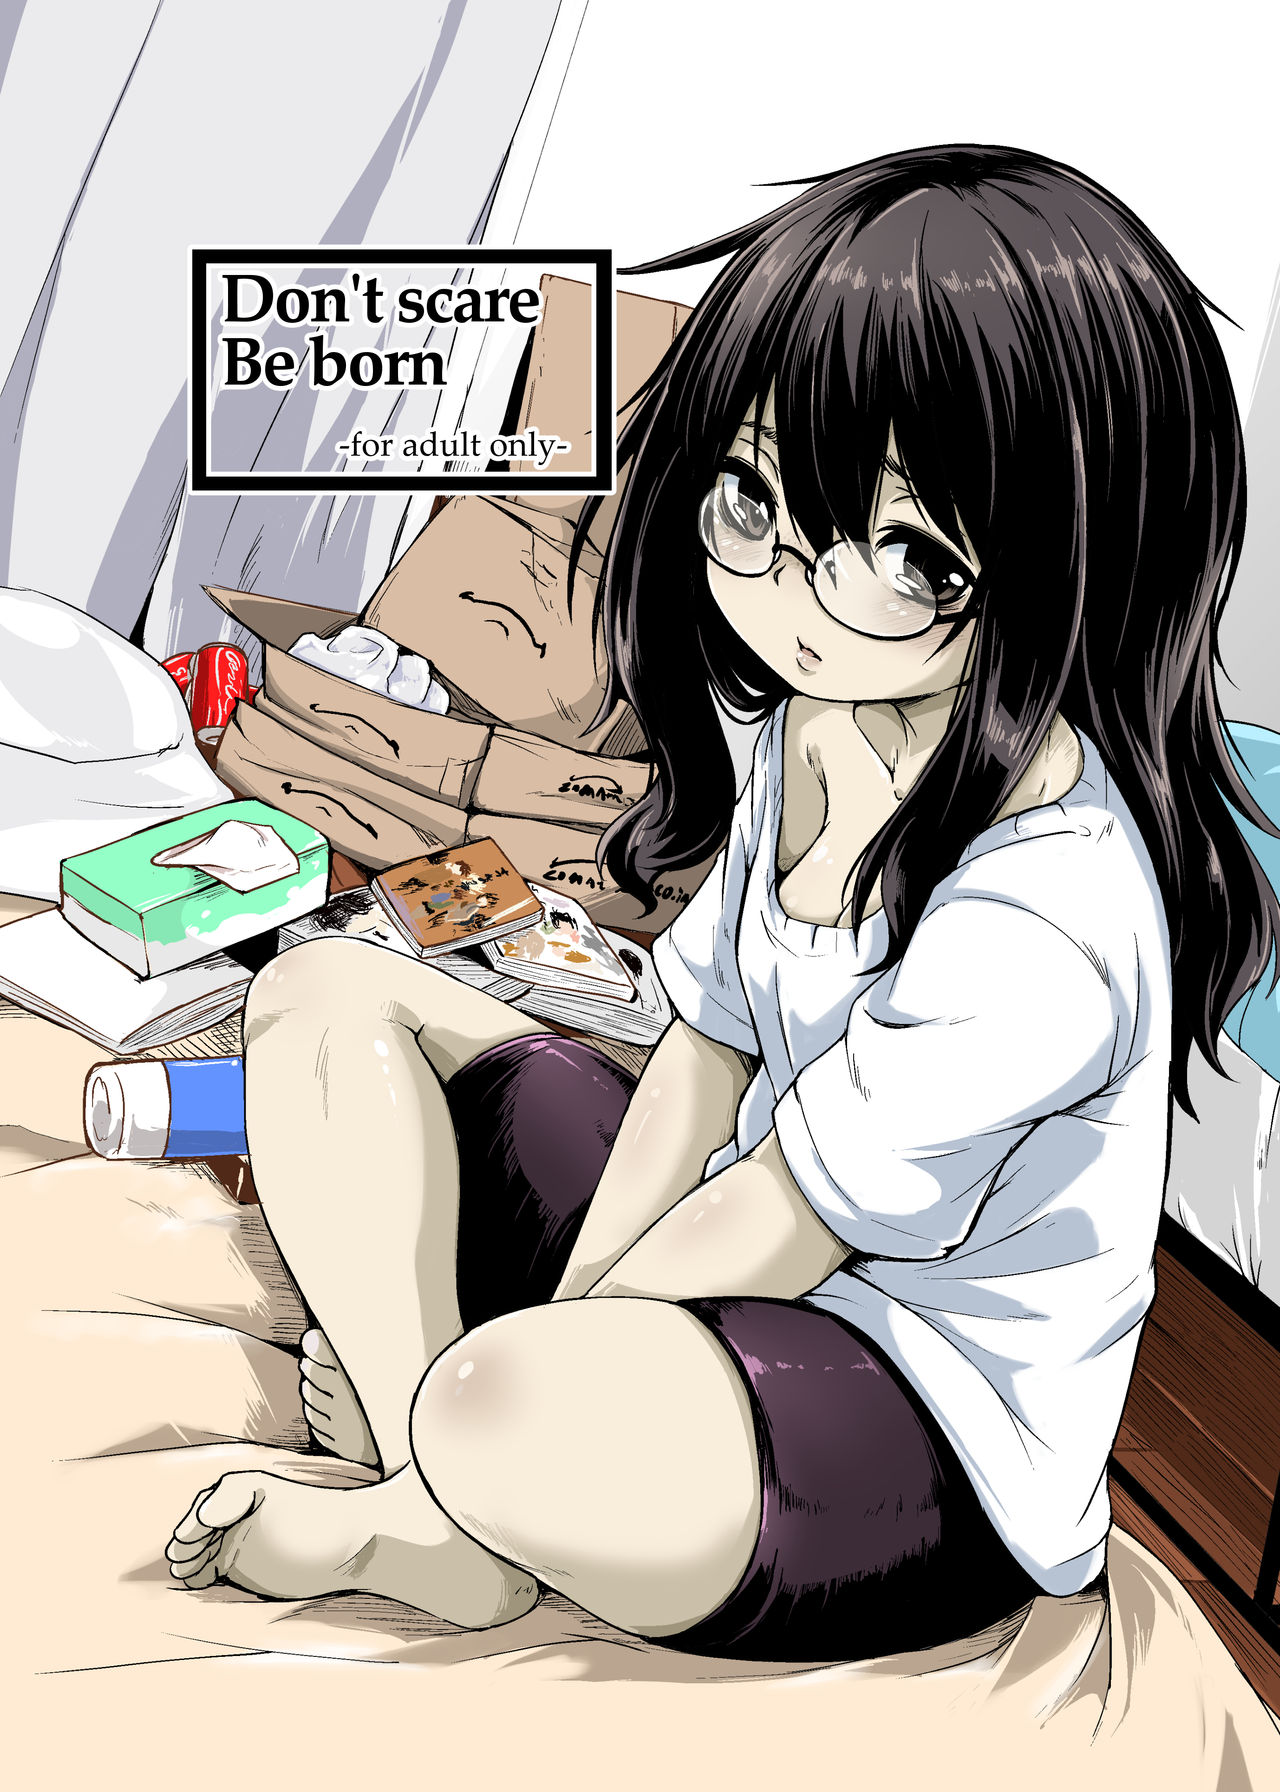 [Katayude Tamago (445)] Don't scare be born + Botsu tta manga desu. [Digital] page 1 full